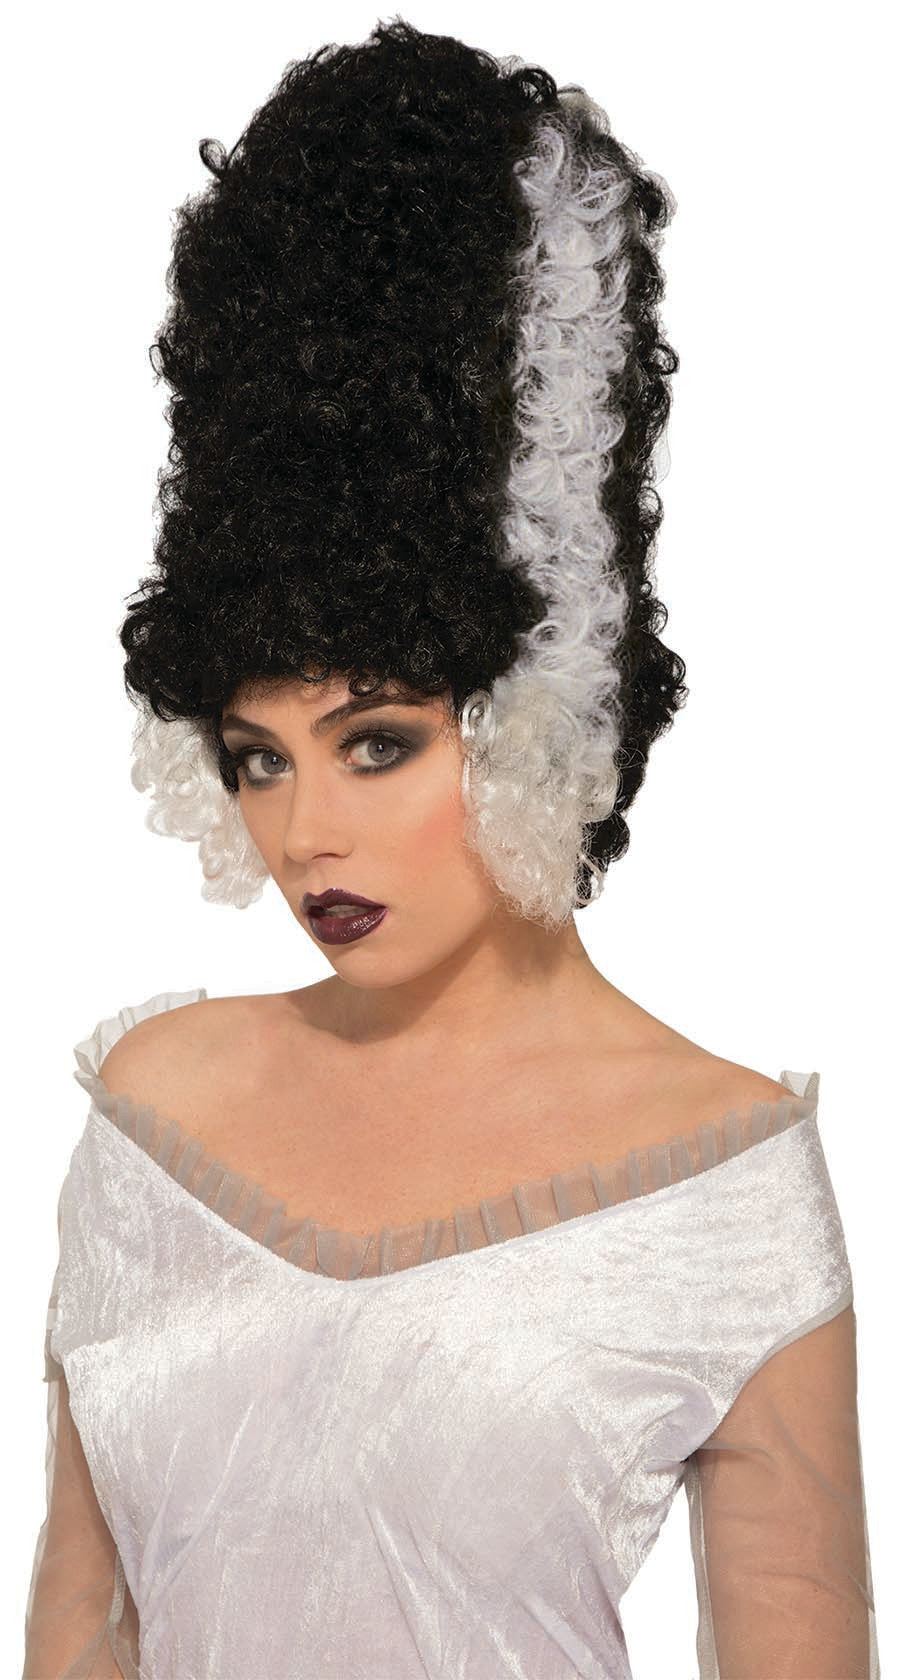 Monster Bride Wig: Black/White